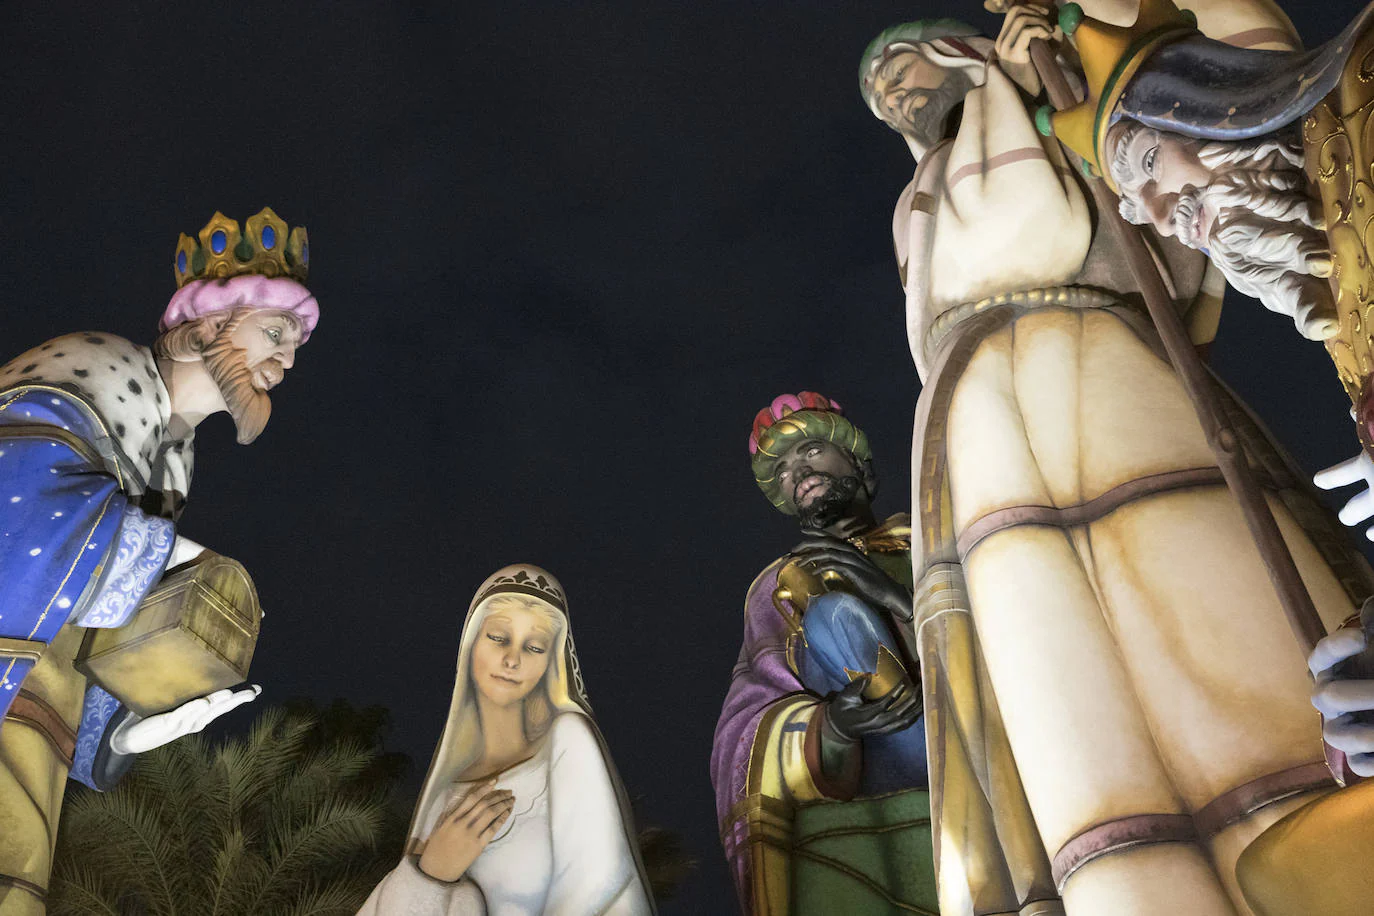 Fotos: Los Reyes Magos se incorporan al belén más grande del mundo en Alicante